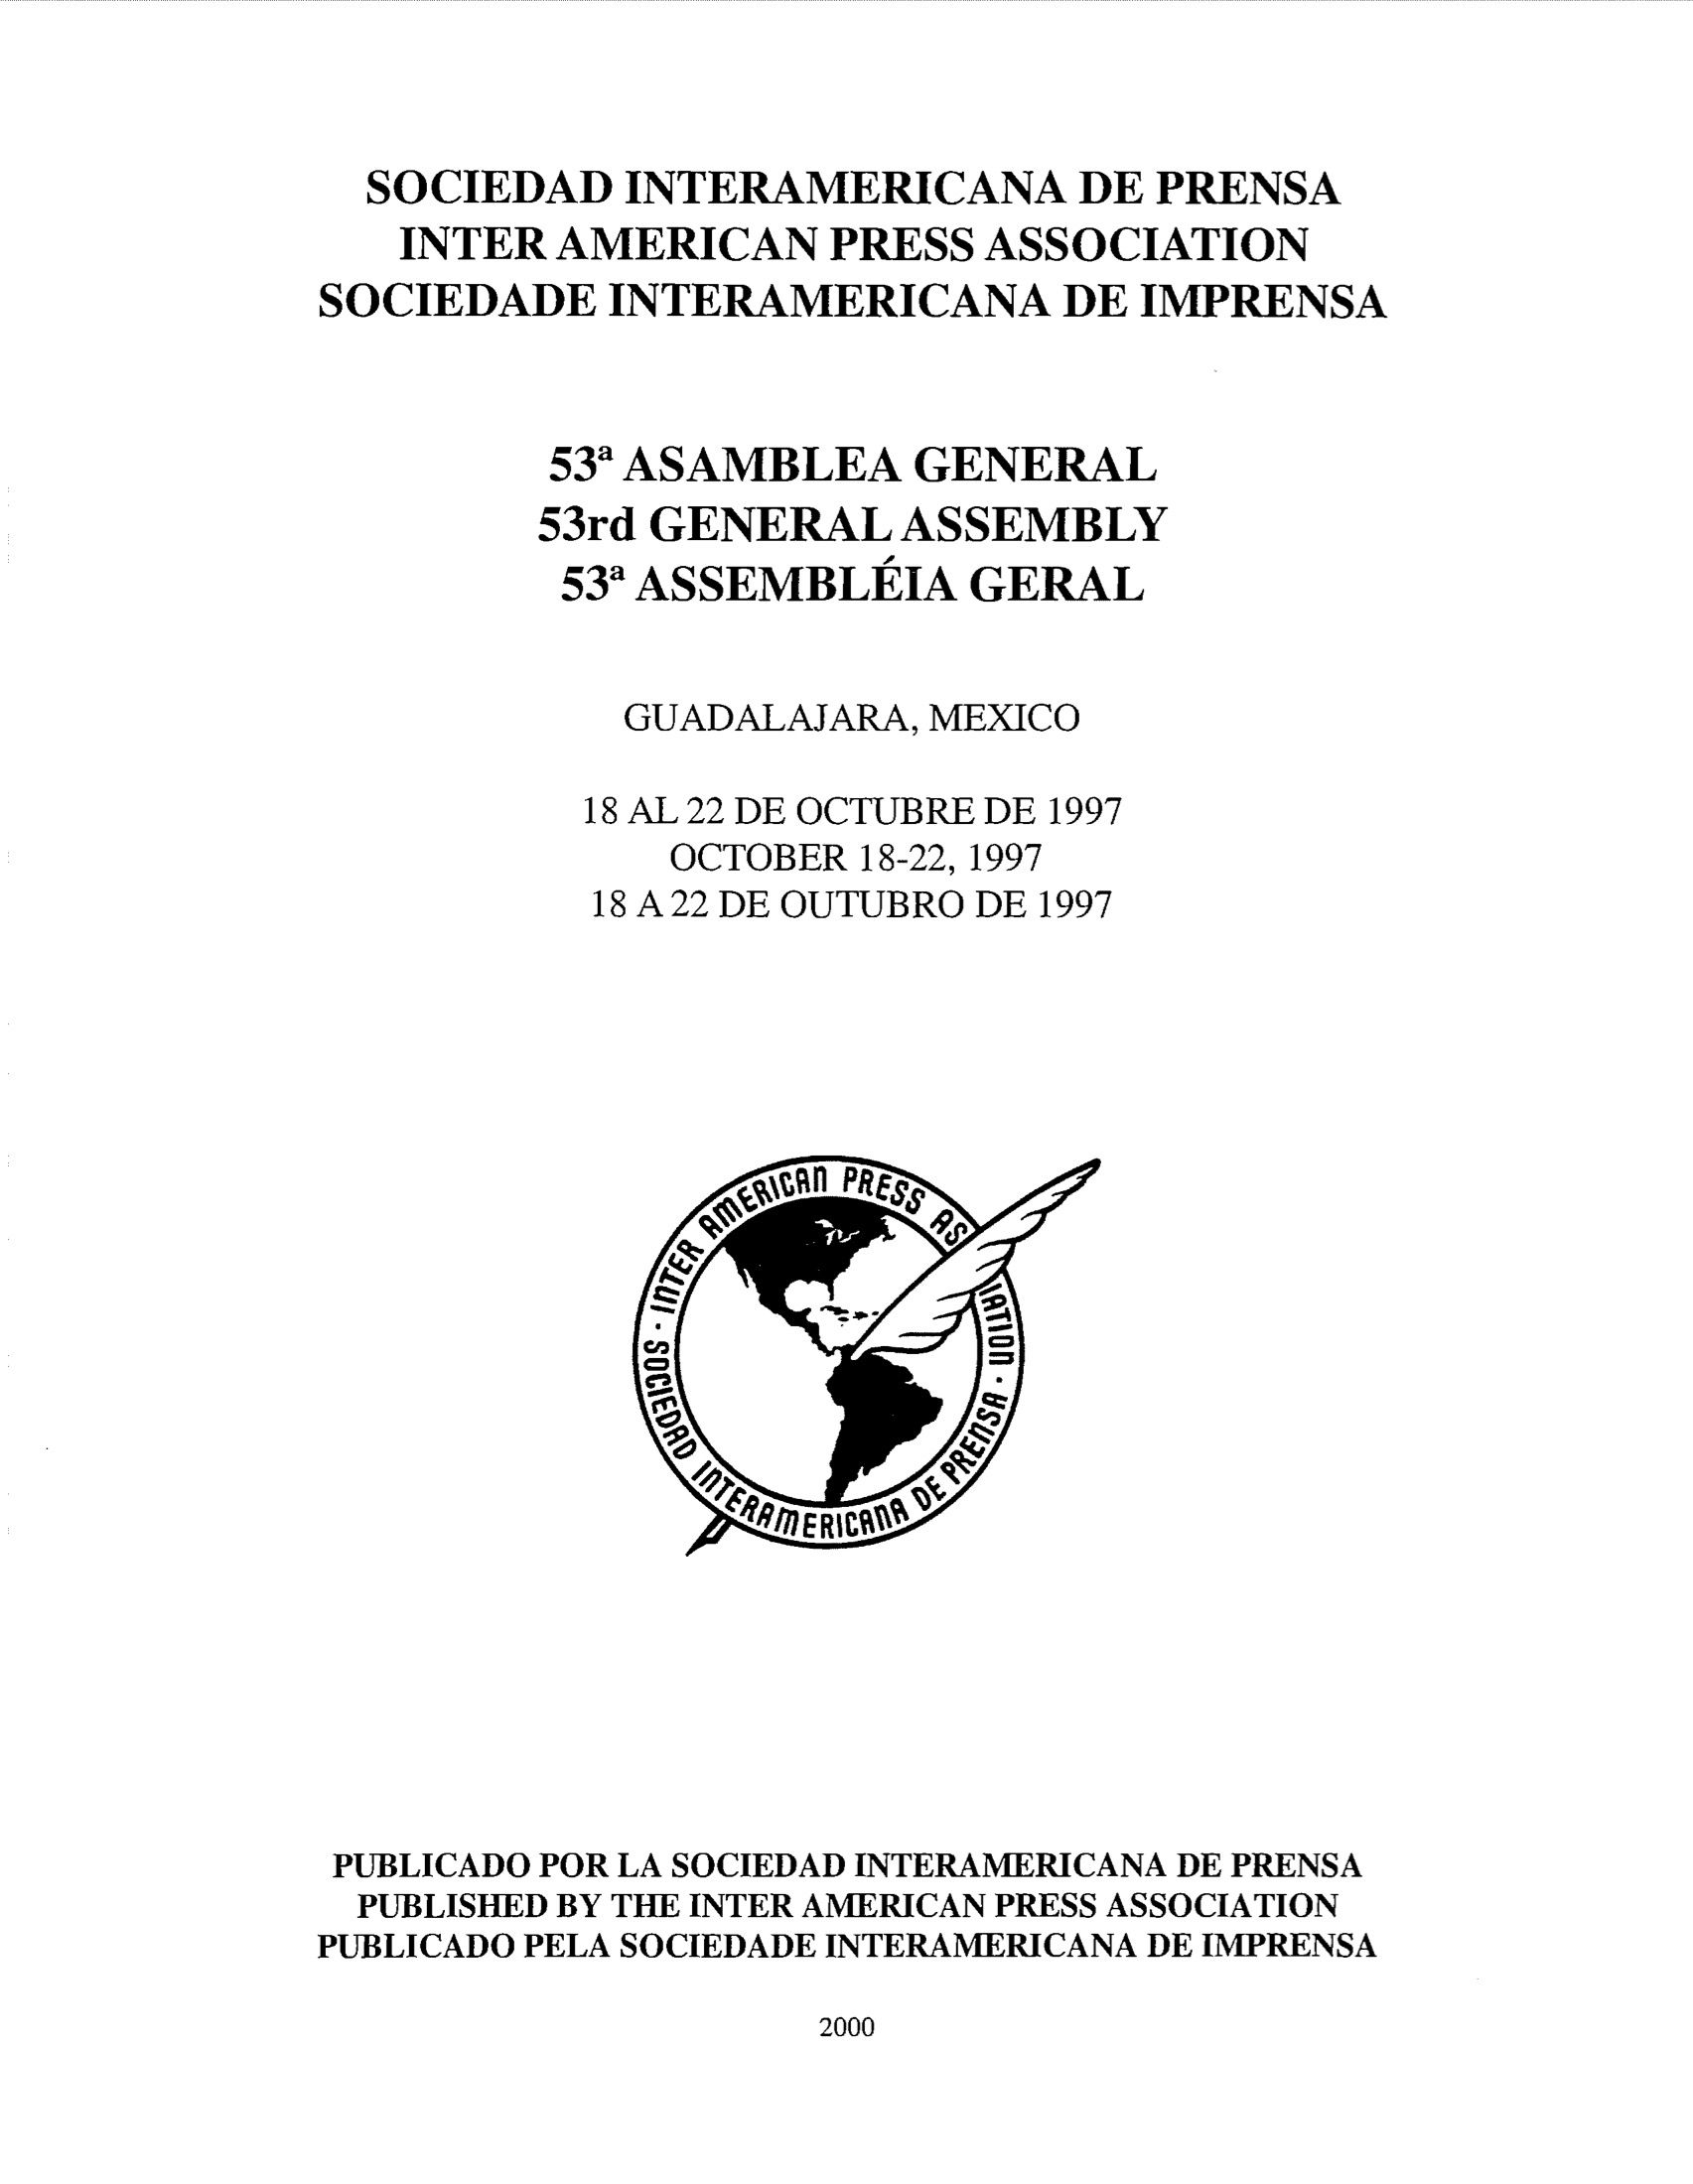 53a Asamblea General. México 1997.